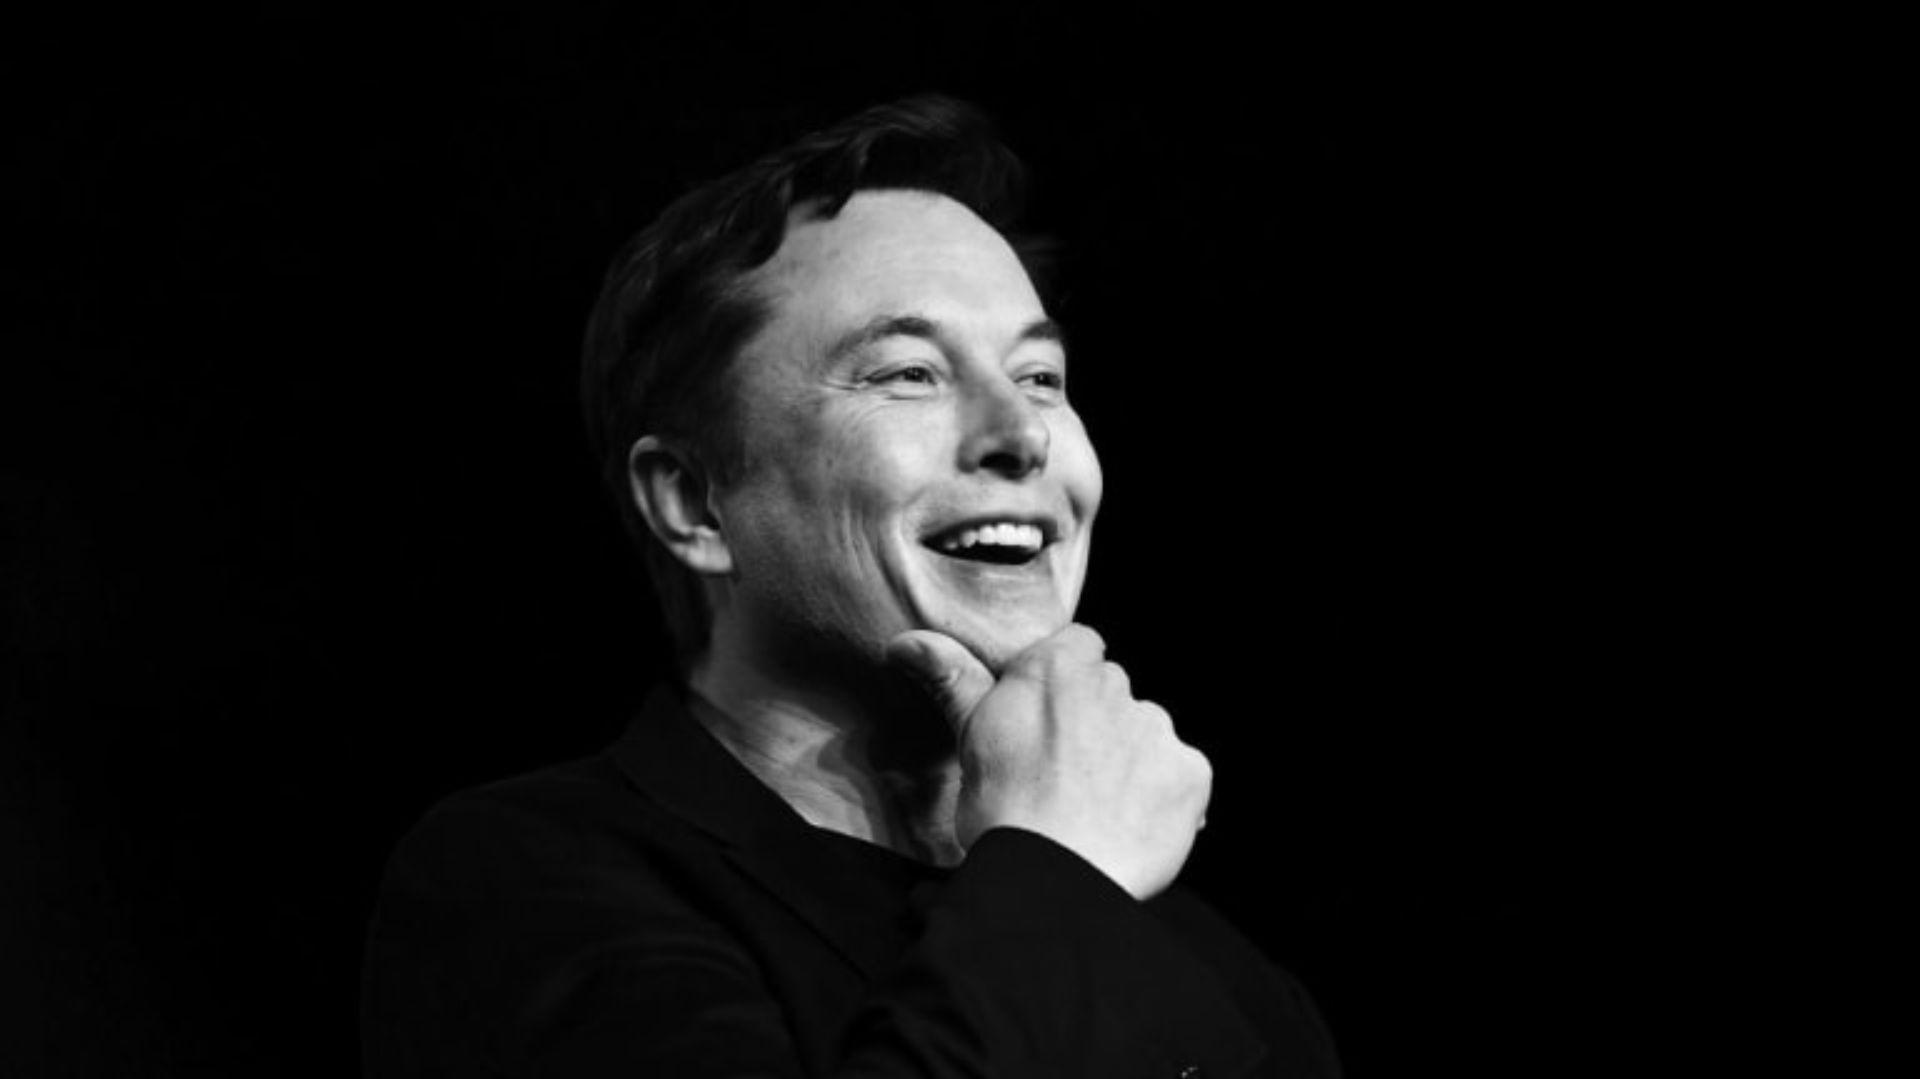 Elon Musk Wallpaper Top Best Background